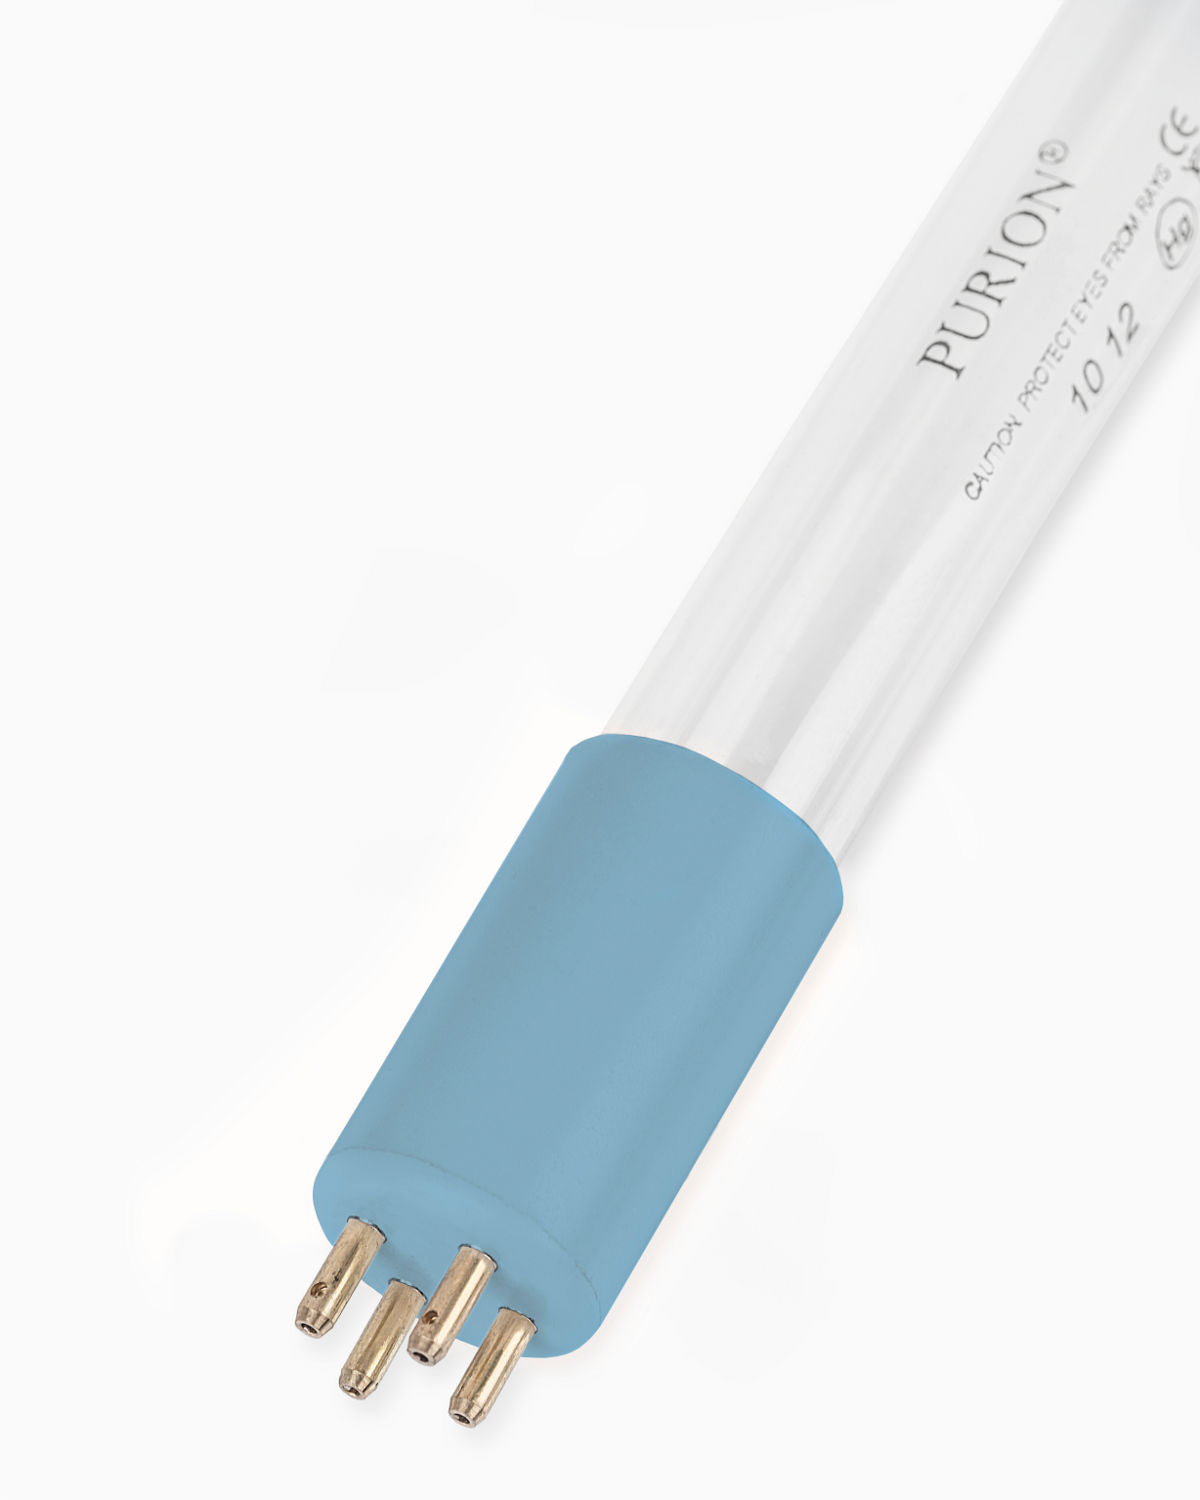 Eine PURION 500 12 V/24 V DC OTC-Blaulichtröhre auf weißem Hintergrund, die für autarke Lebens- oder Desinfektionsanlagenzwecke verwendet wird. (Marke: PURION GmbH)